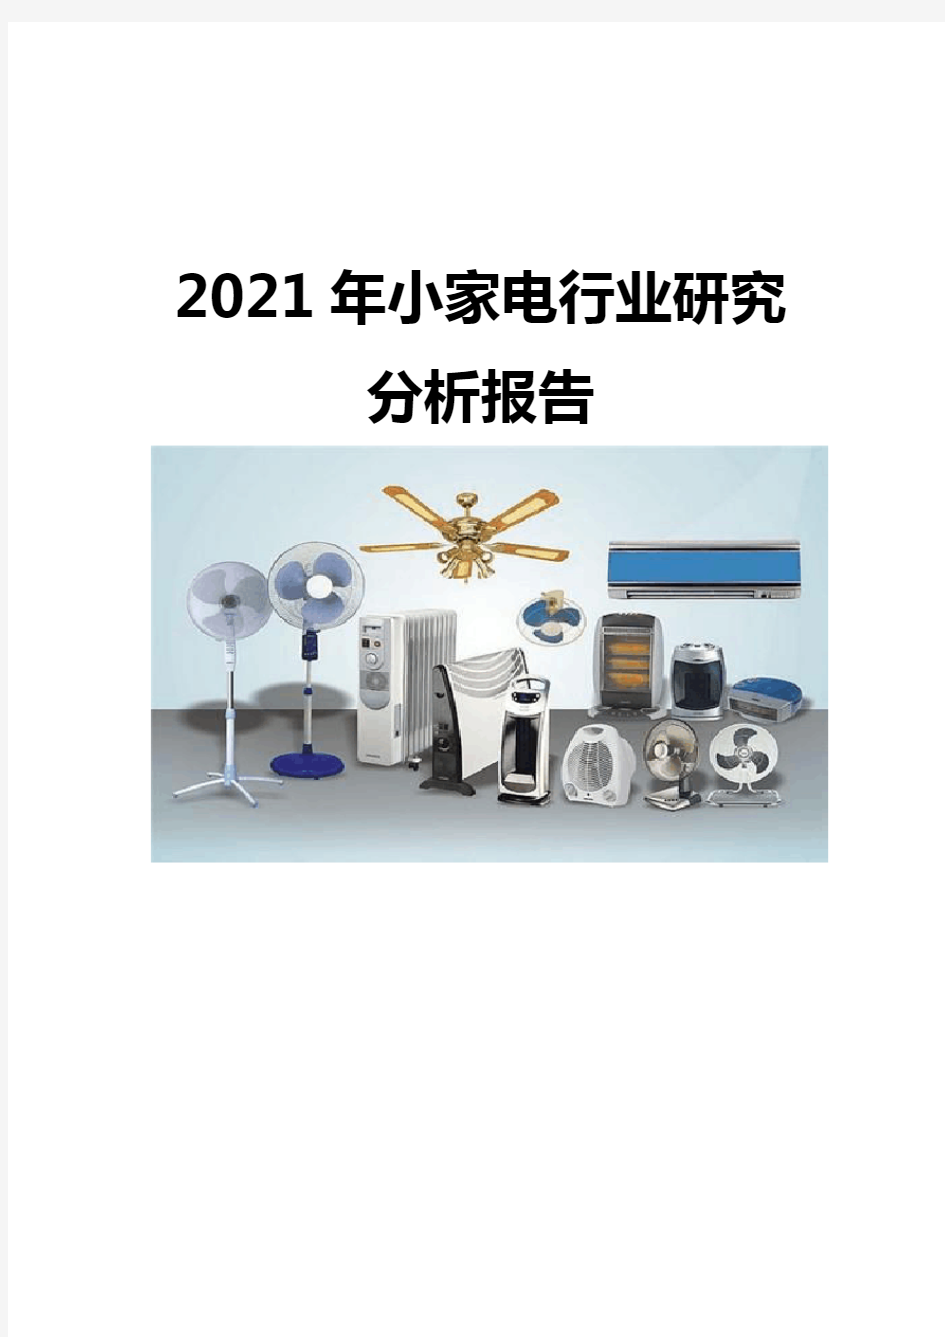 2021小家电行业研究分析报告